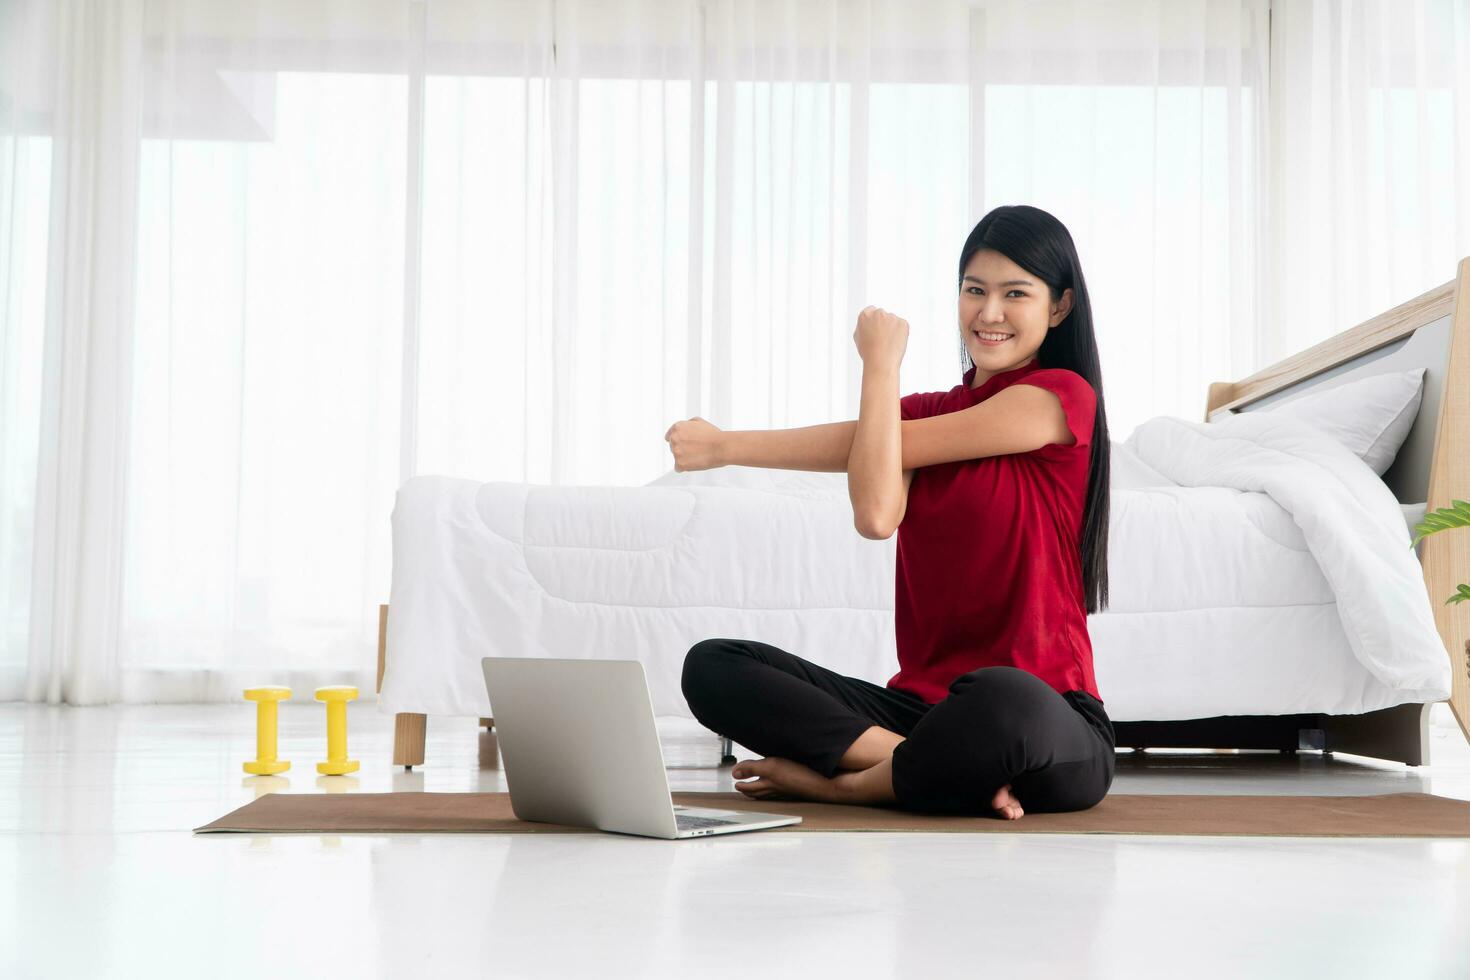 retrato de una joven asiática sana practicando ejercicios de yoga sentada en el dormitorio y aprendiendo en línea en una laptop en casa. concepto de ejercicio y relajación, tecnología para un nuevo estilo de vida normal foto